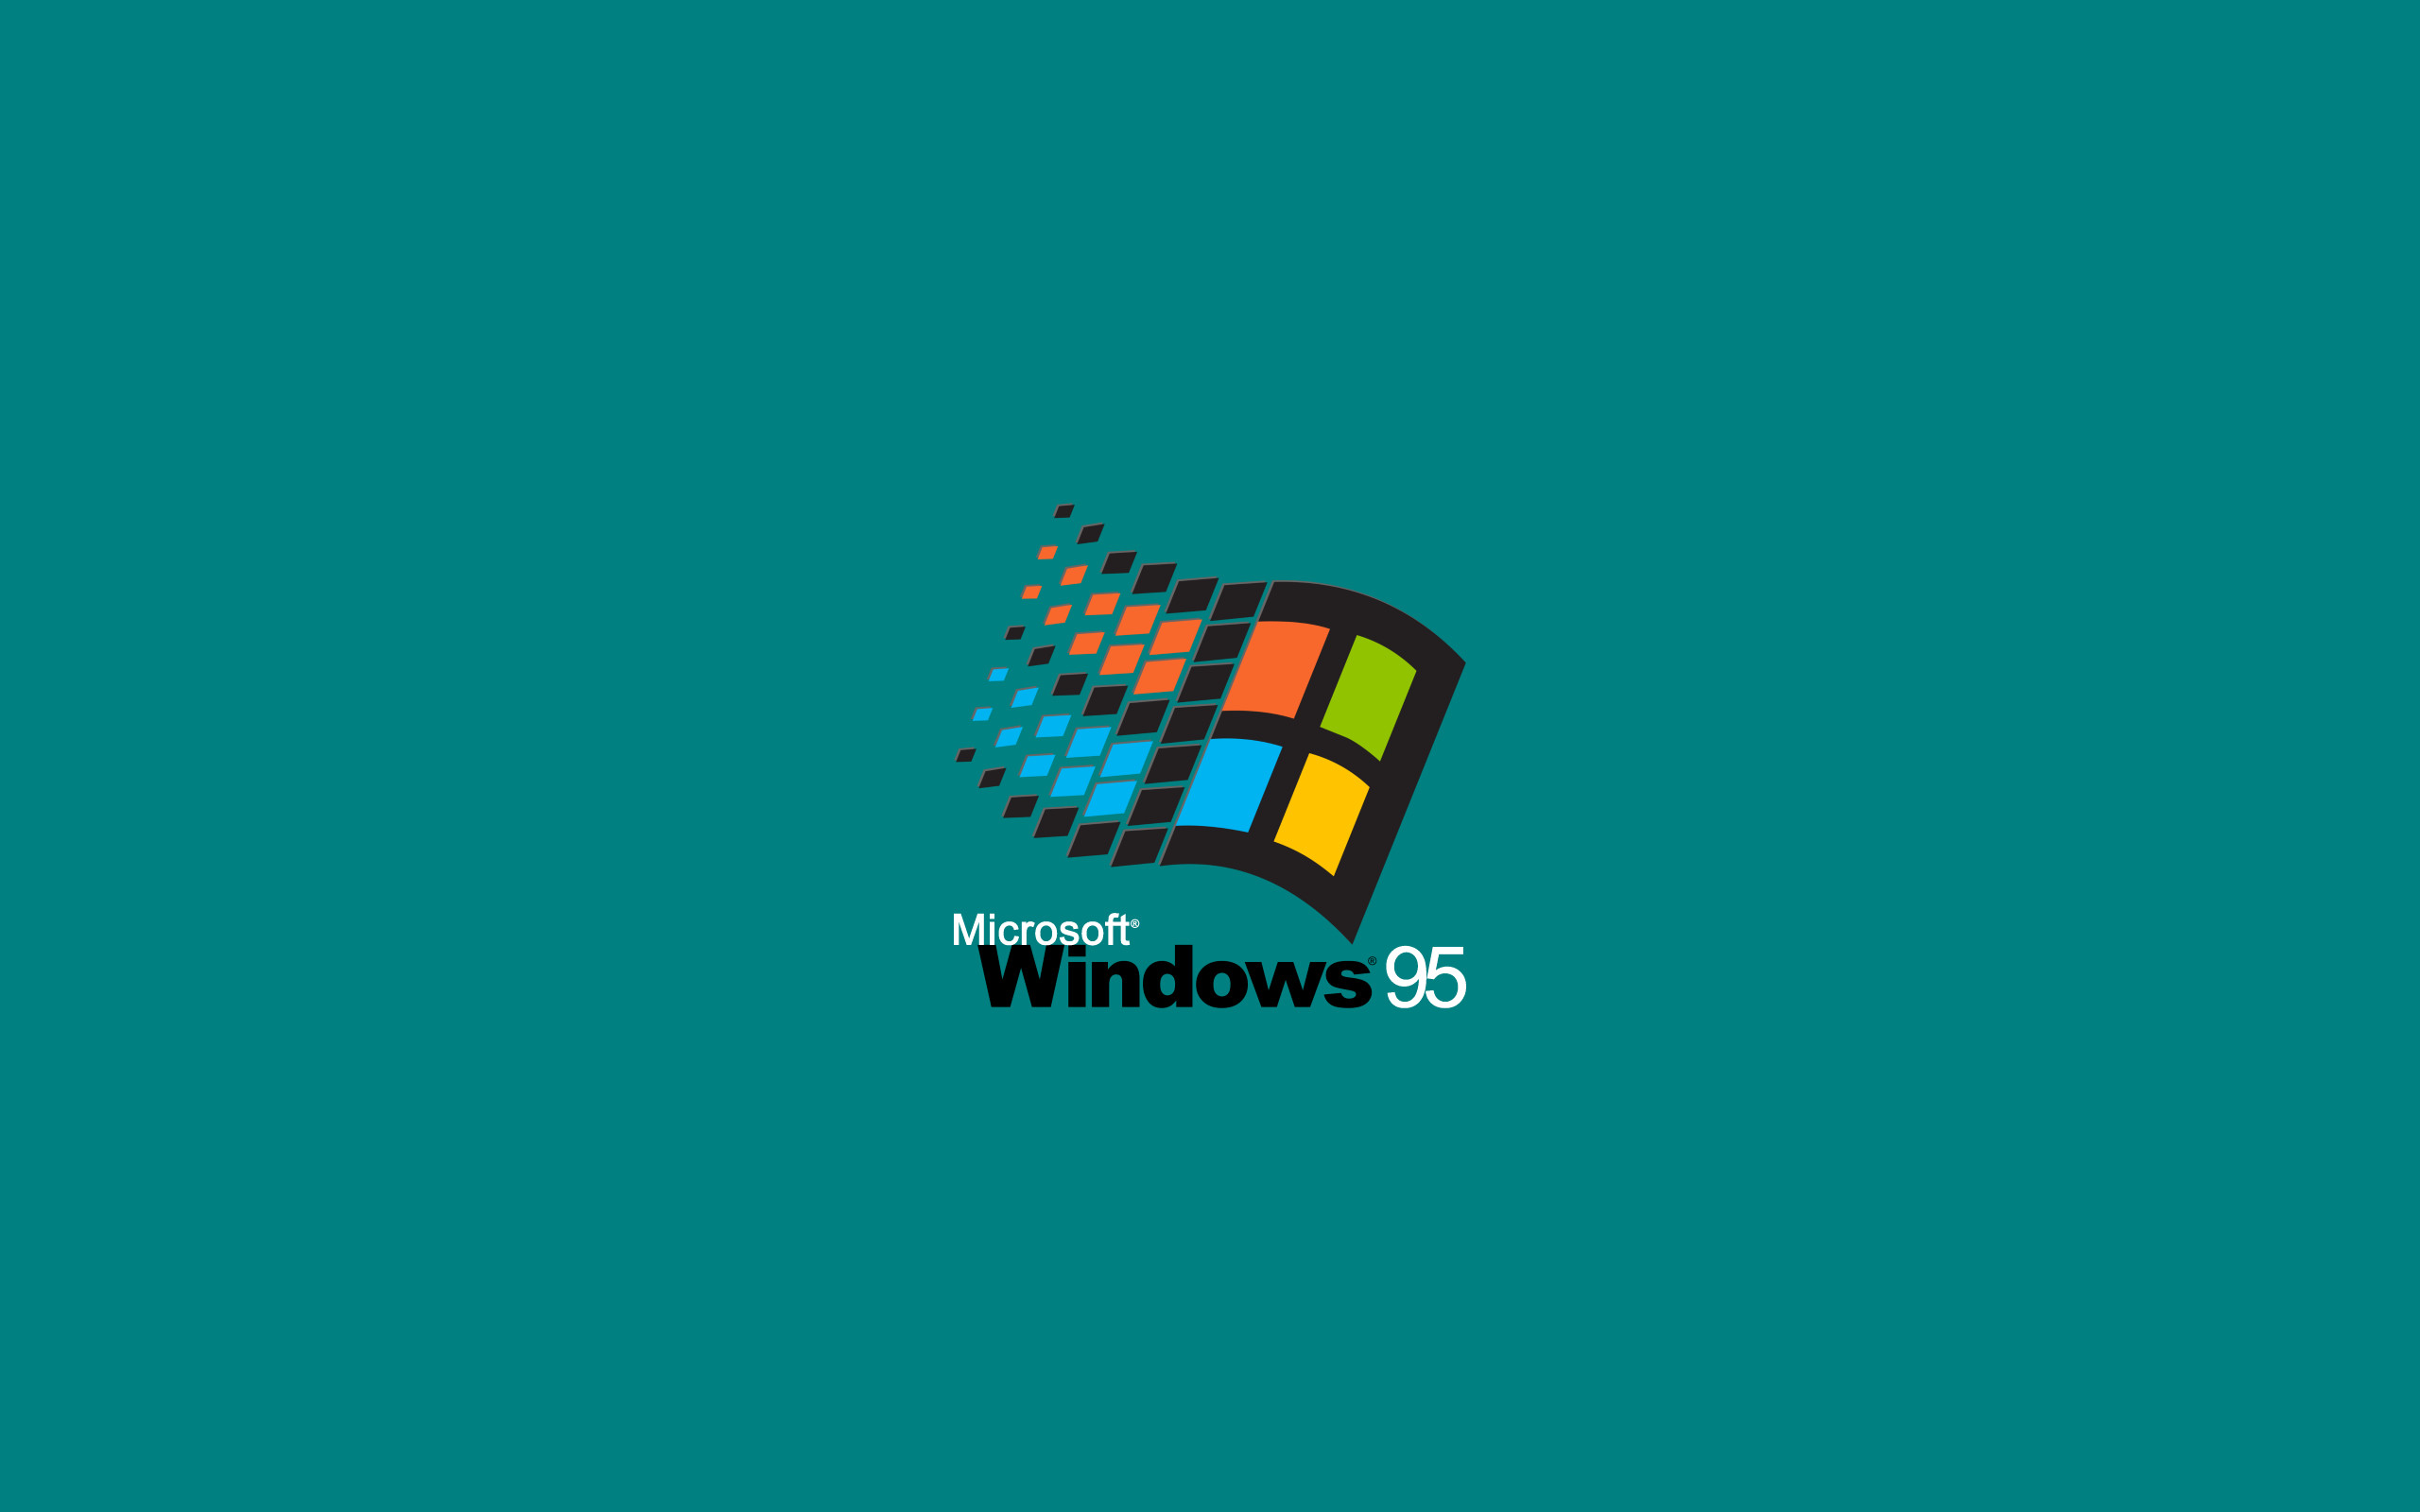 Windows Logo Background Image